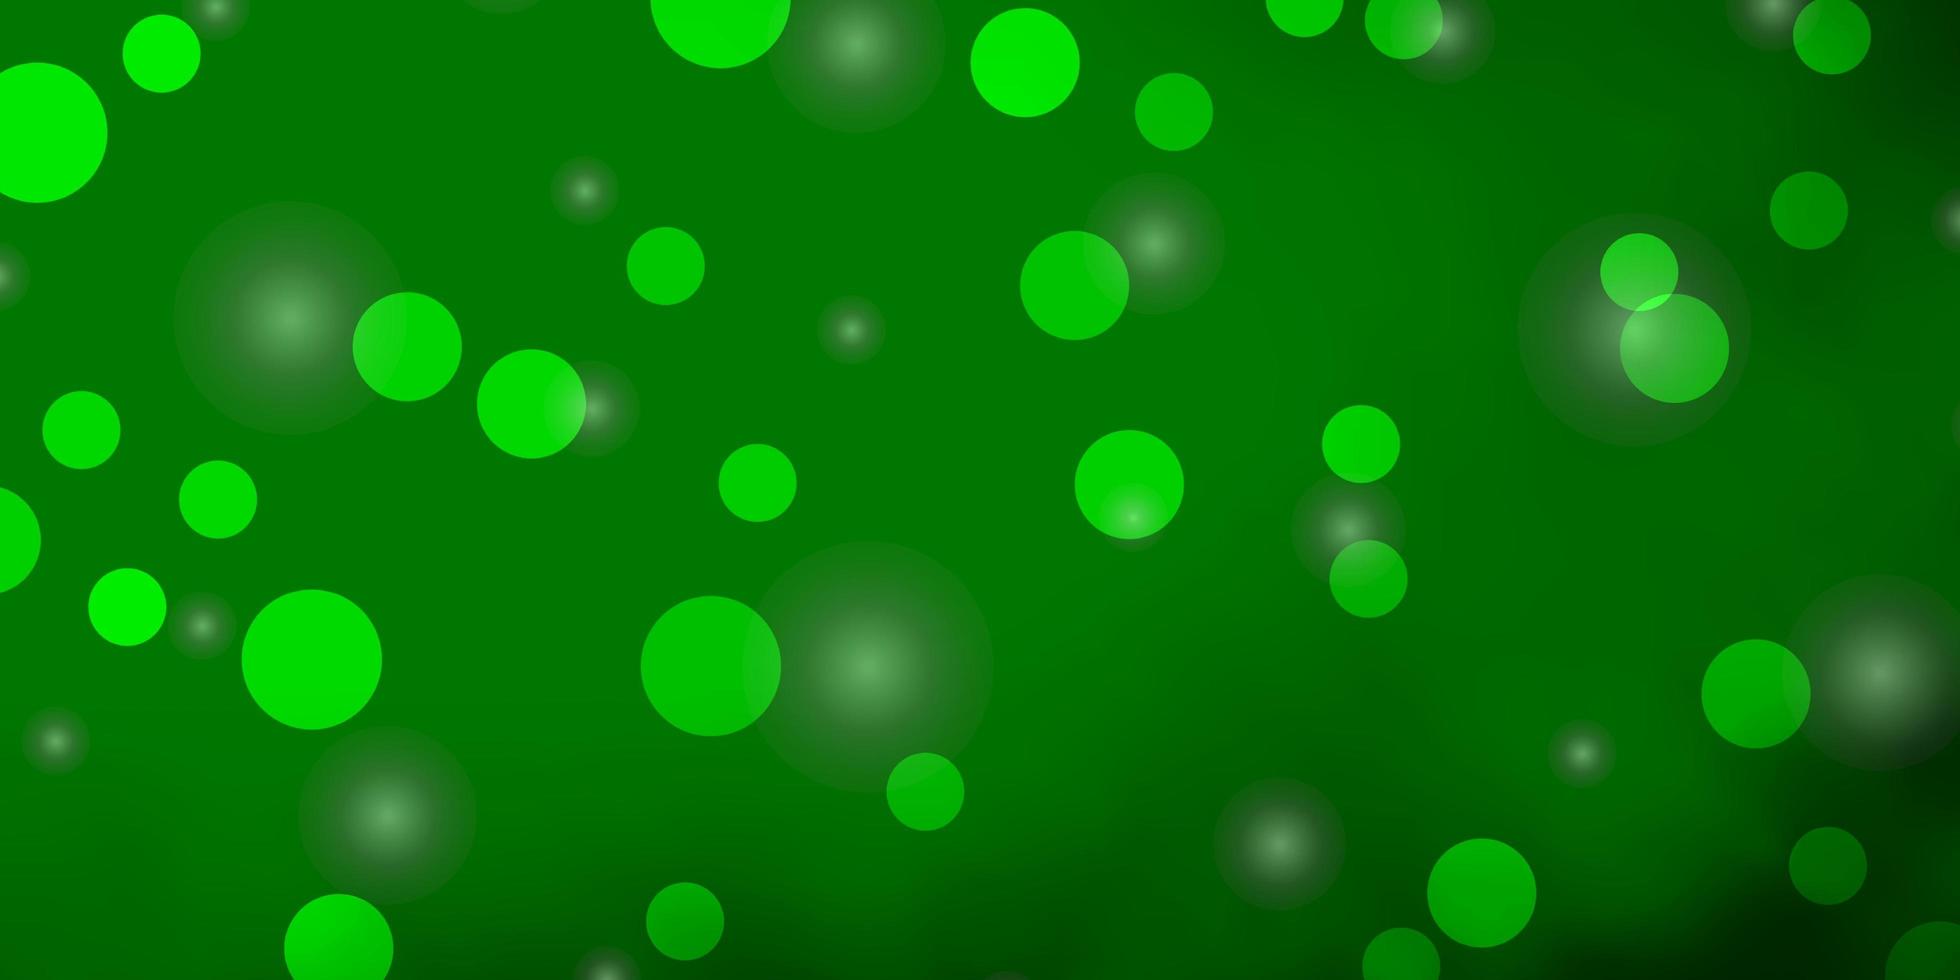 fondo de vector verde claro con círculos estrellas discos de colores estrellas en diseño de fondo degradado simple para carteles pancartas